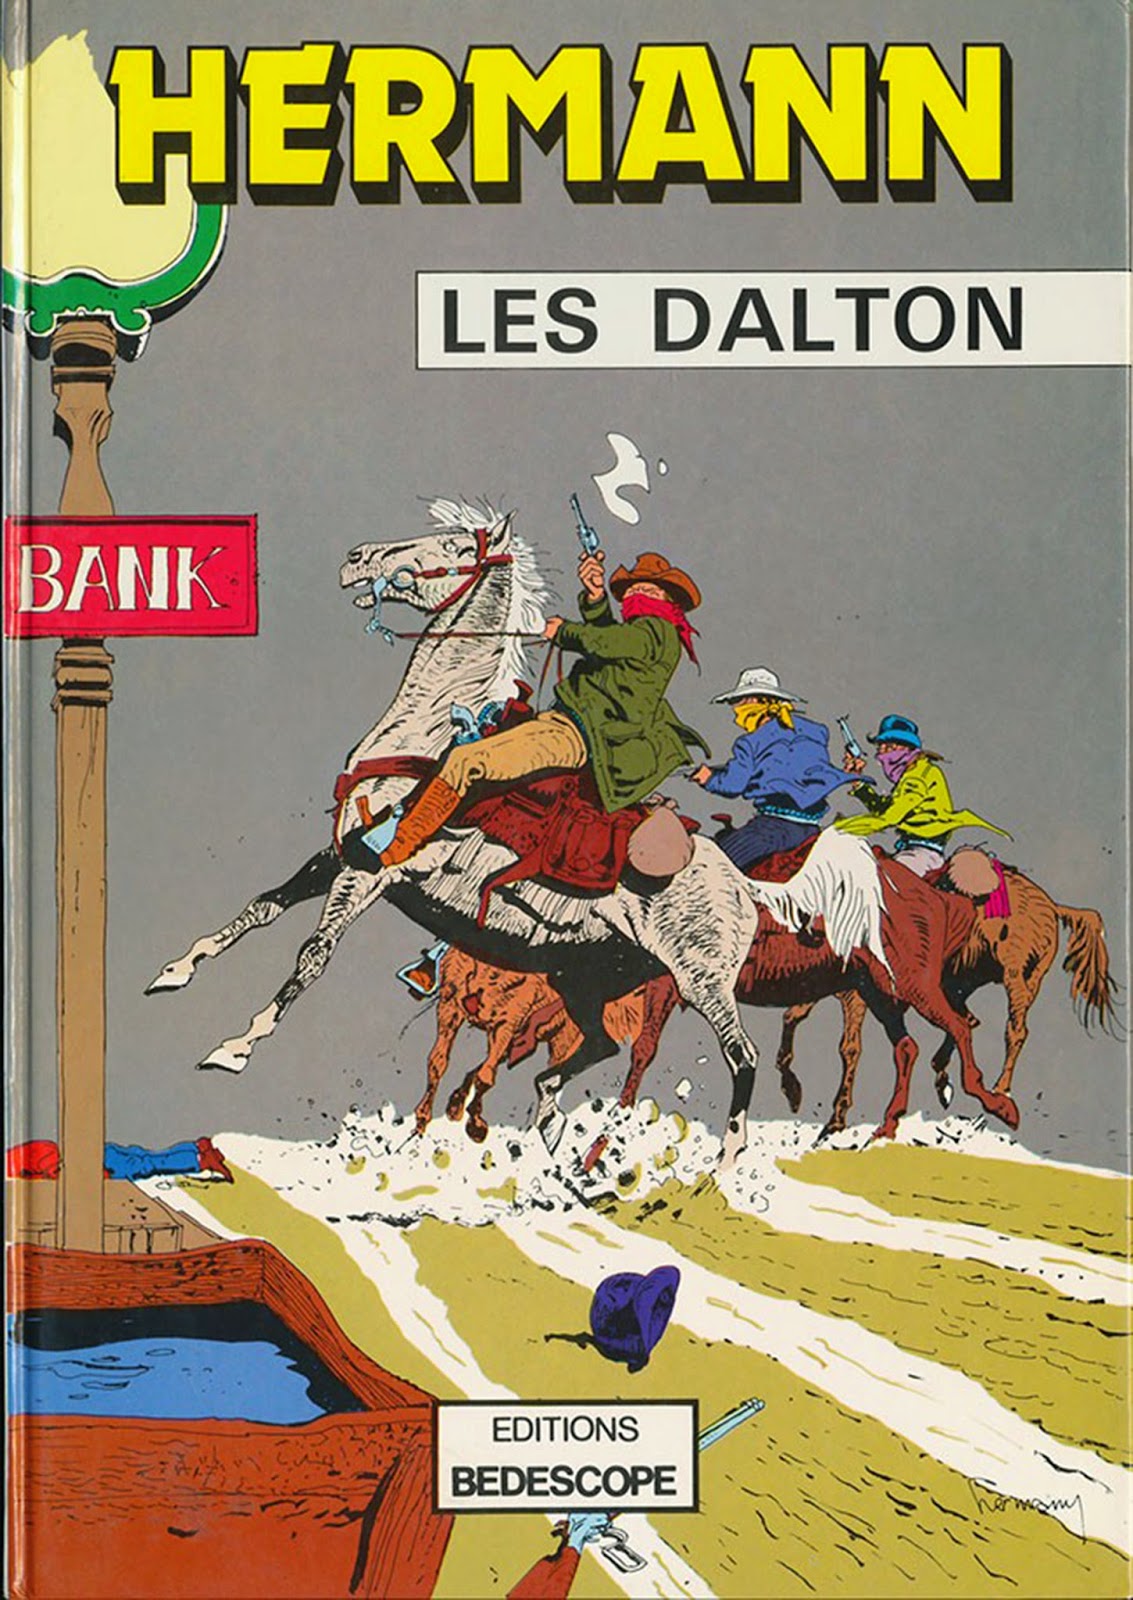 Les Dalton par Hermann et Step en 1967 (éd. Bedescope 1980)